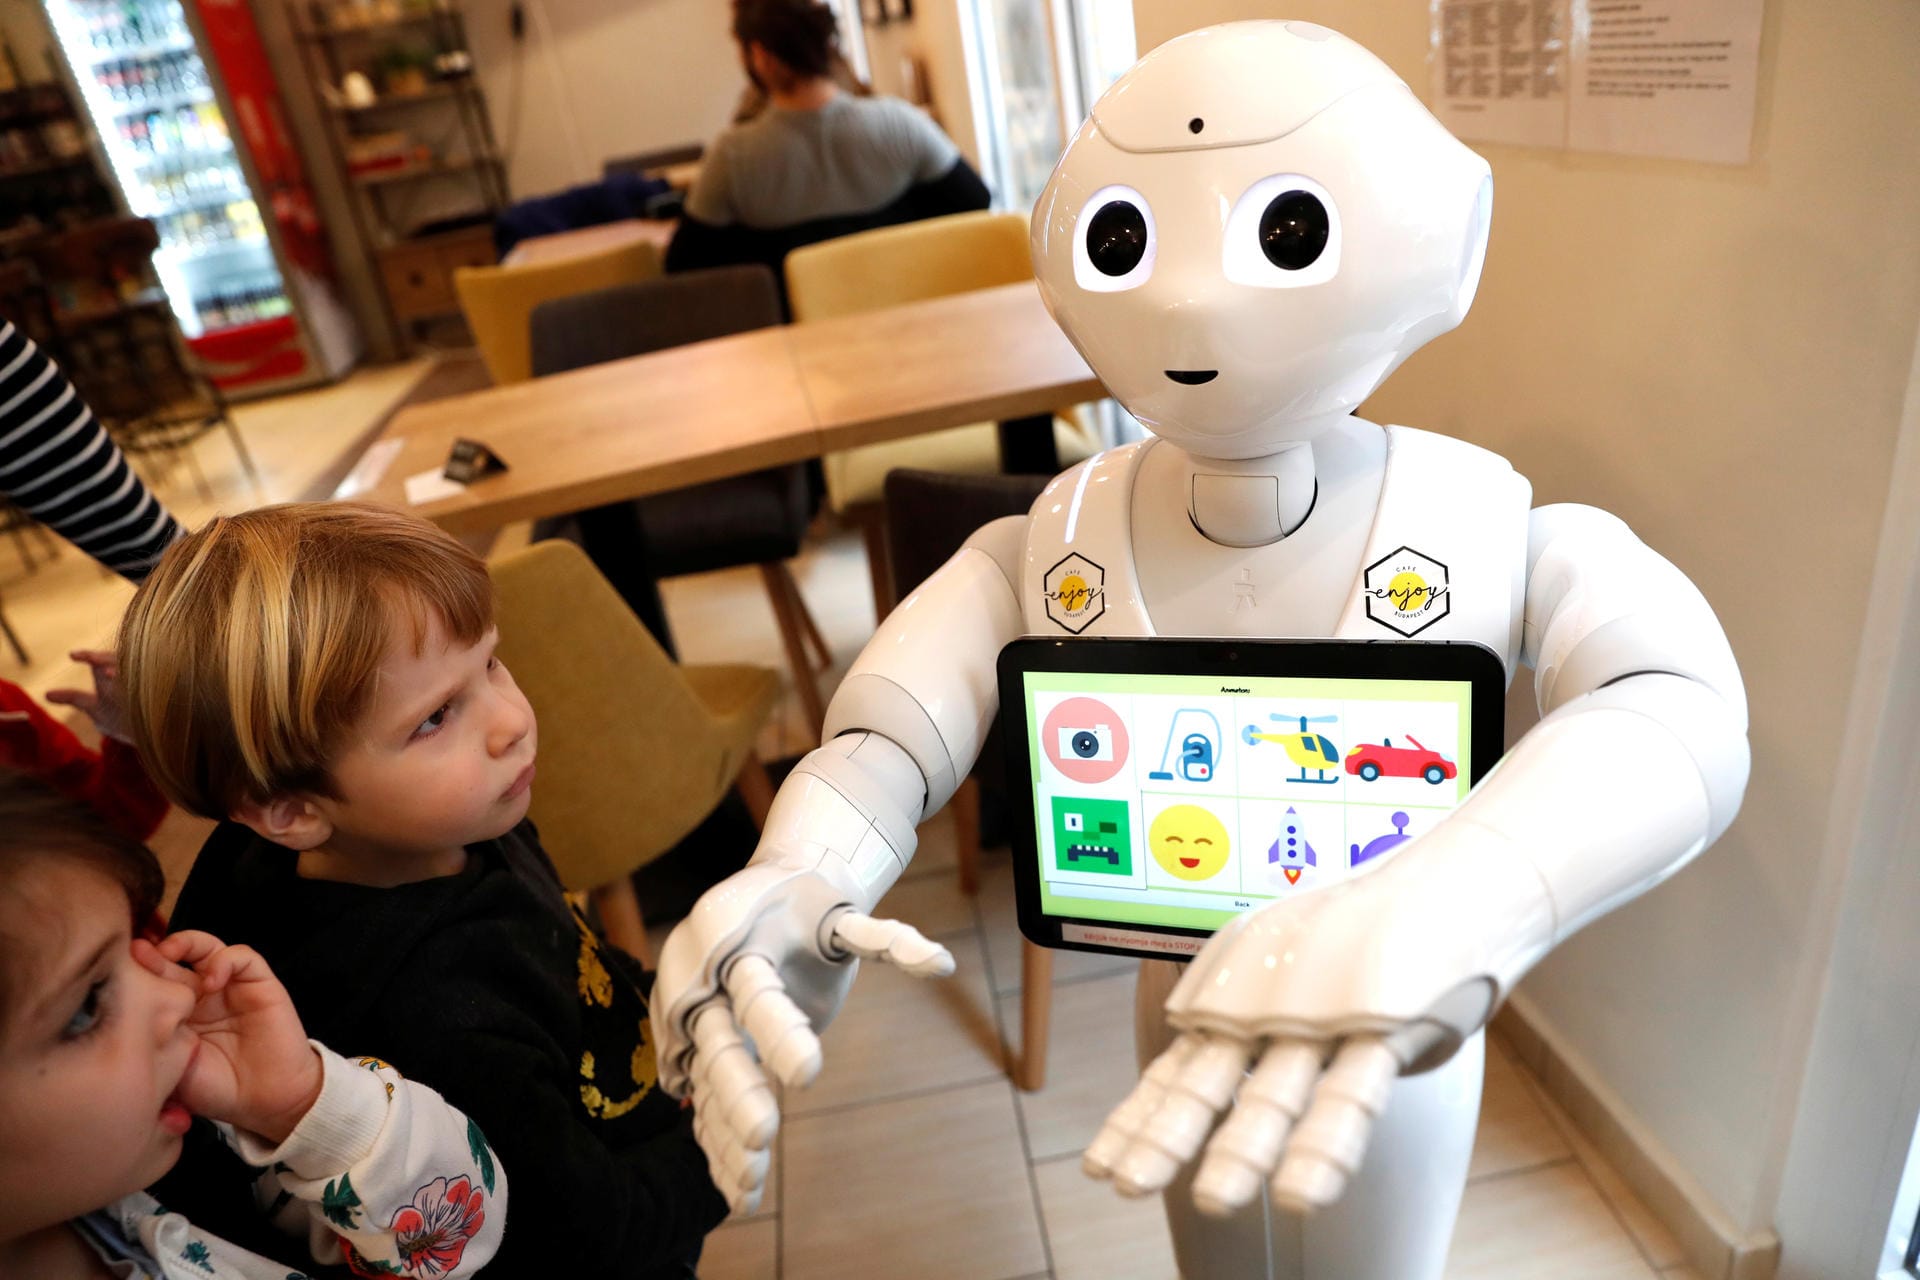 Der Roboter "Pepper" soll langfristig als persönlicher Roboter zum Einsatz kommen. Derzeit informiert er vor allem Kunden in Verkaufsräumen.